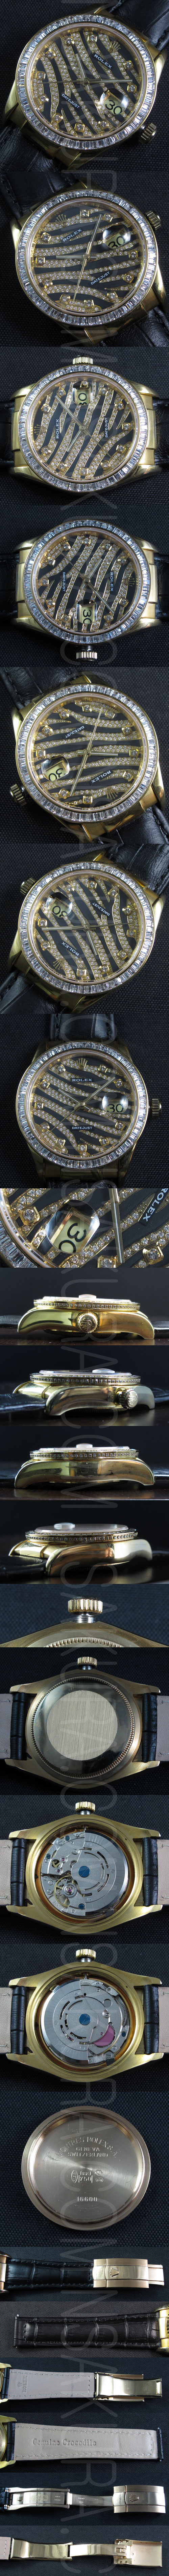 レプリカ時計ロレックス デイトジャスト ロイヤル ブラック ゴールドAsianムーブ搭載 - ウインドウを閉じる